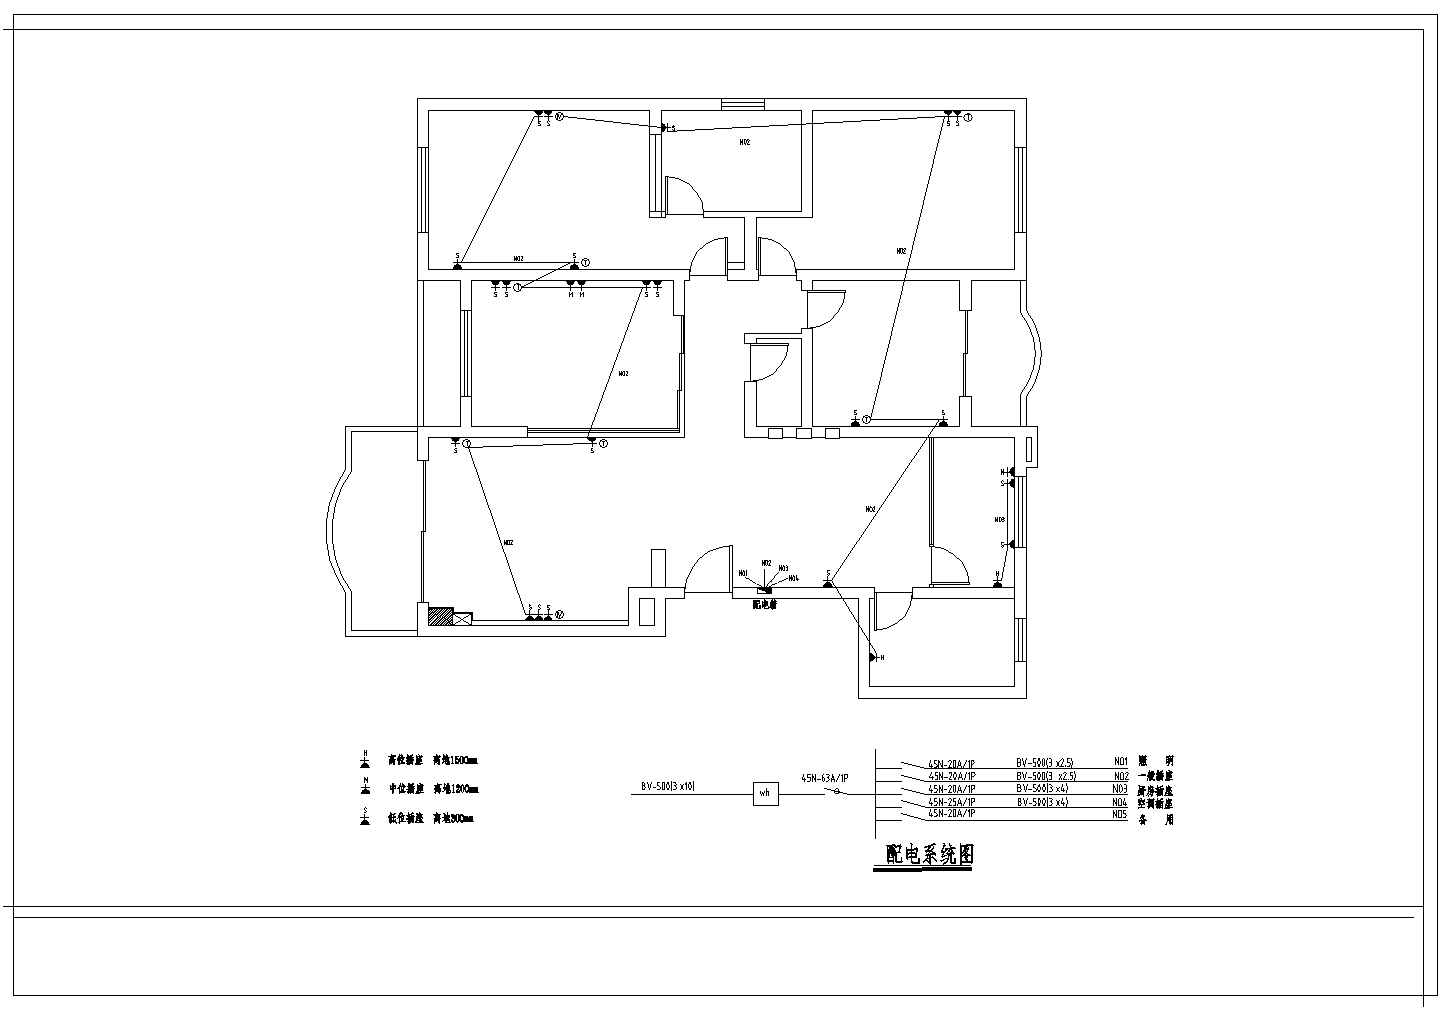 【常州】某简约风格住宅楼装修施工设计cad图纸(含原建筑平面布置图)